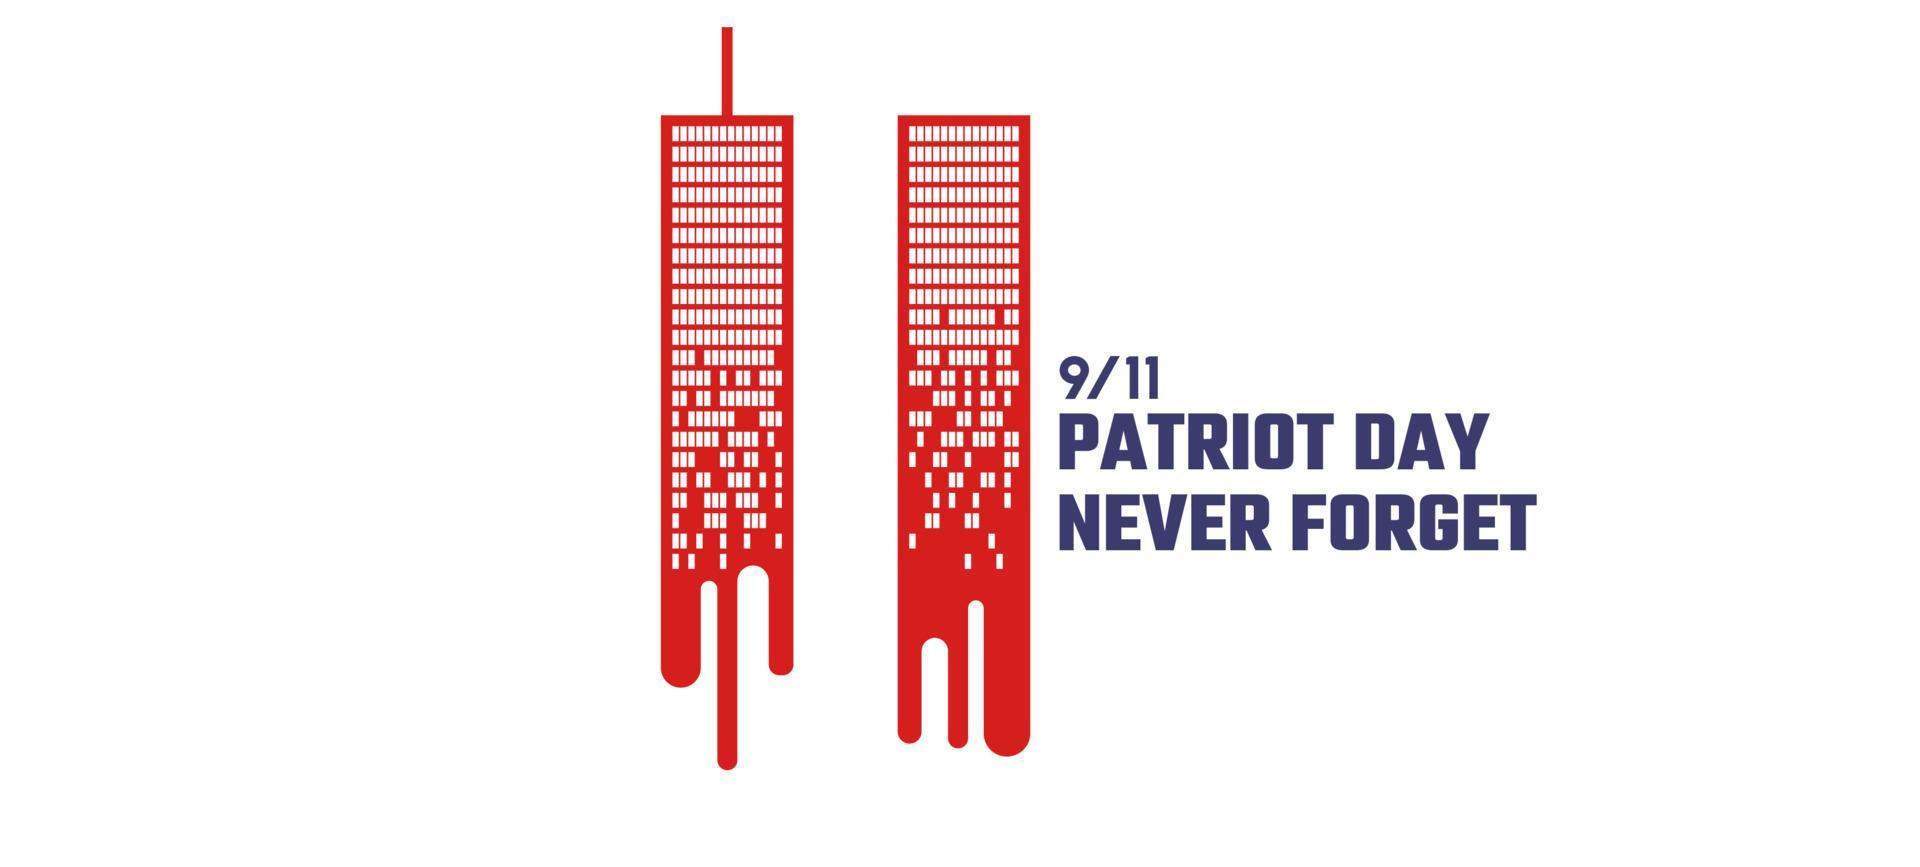 9 11 minnesdag 11 september.patriotdagen nyc world trade center. vi kommer aldrig att glömma, terrorattackerna den 11 september. World Trade Center smälter som blod vektor